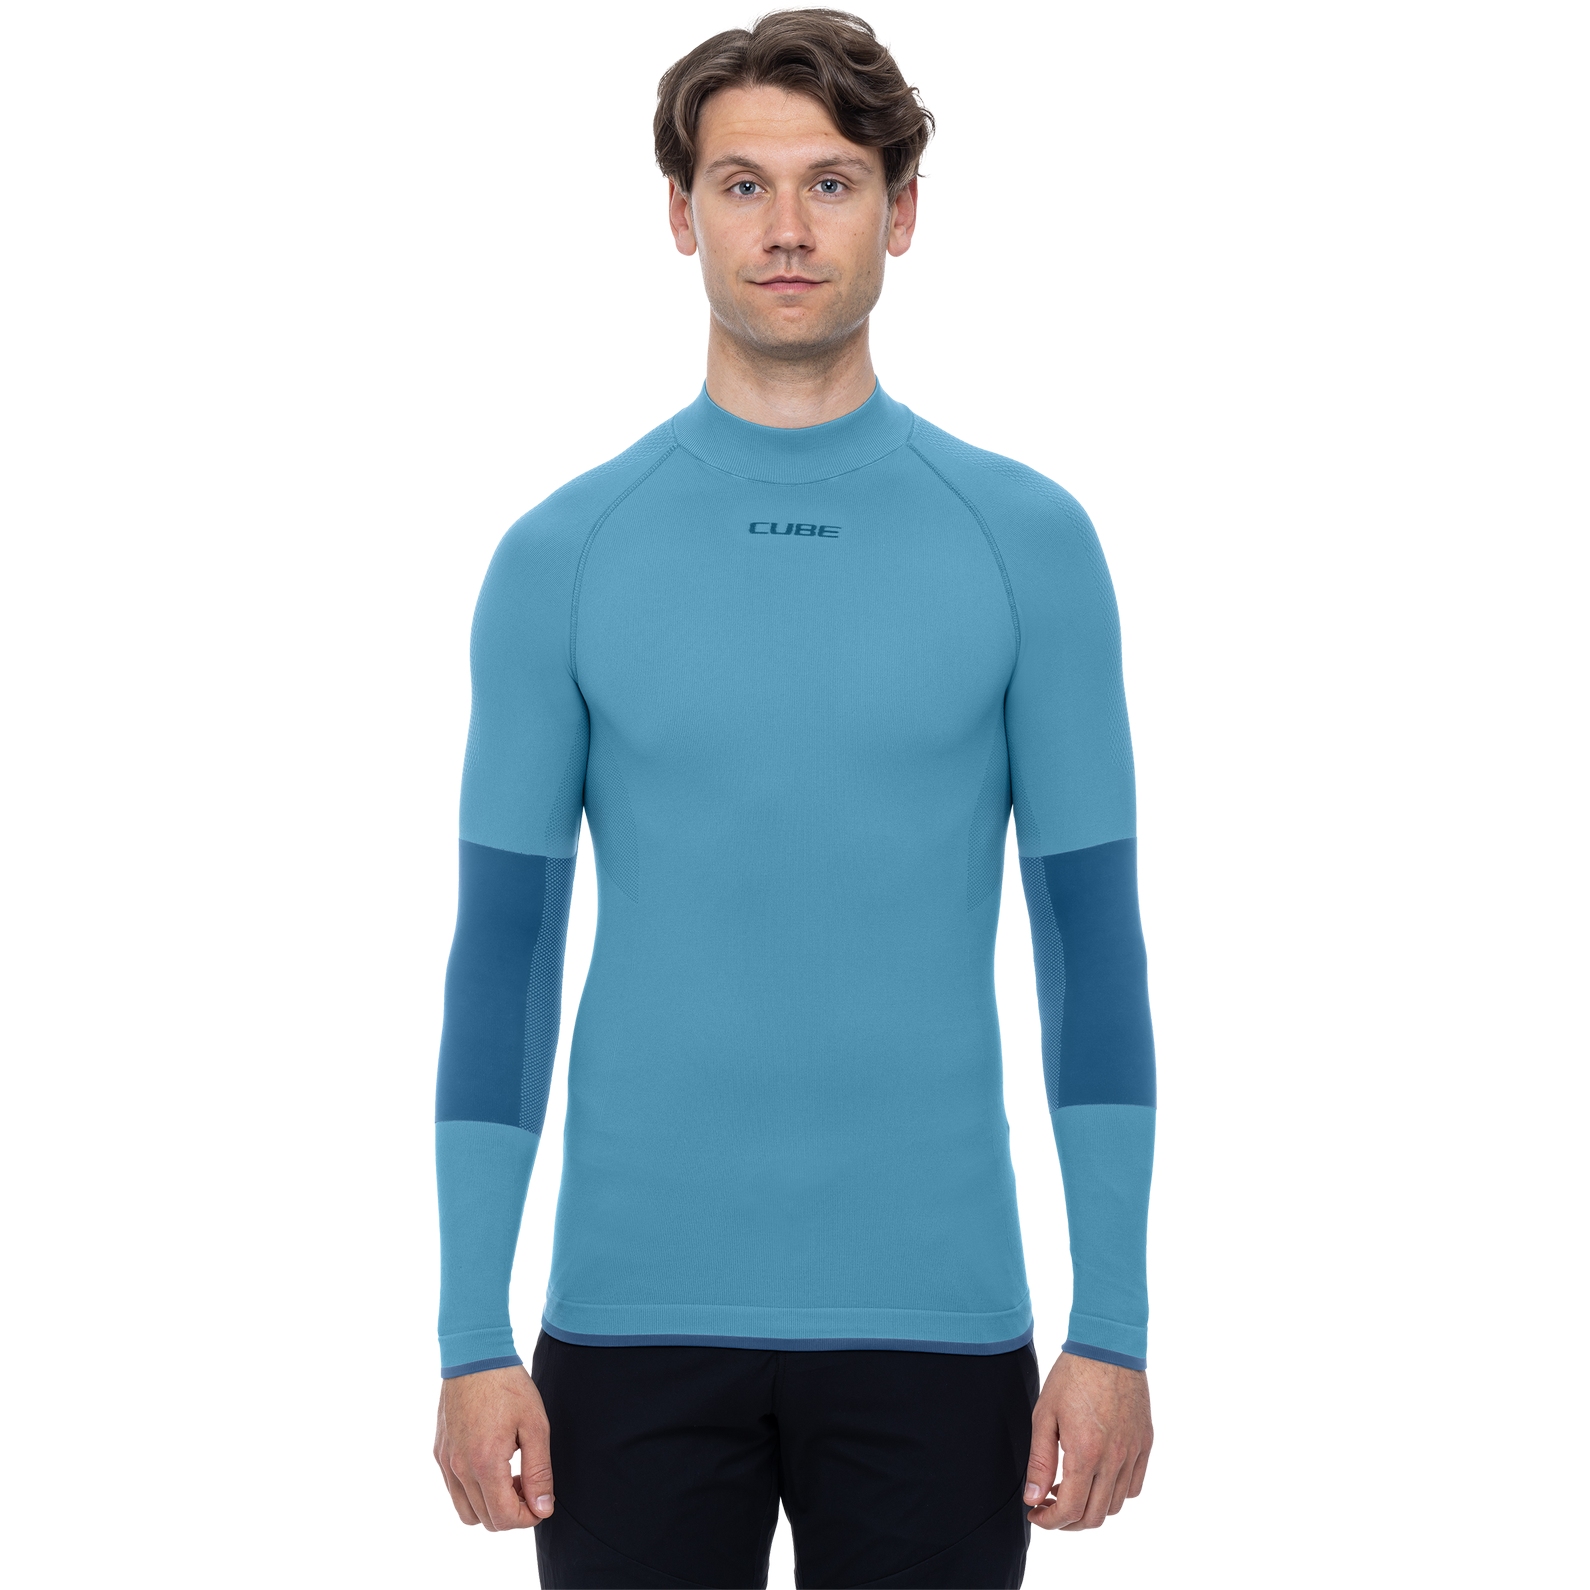 Produktbild von CUBE Race Be Warm Langarm-Funktionsunterhemd Herren - blau